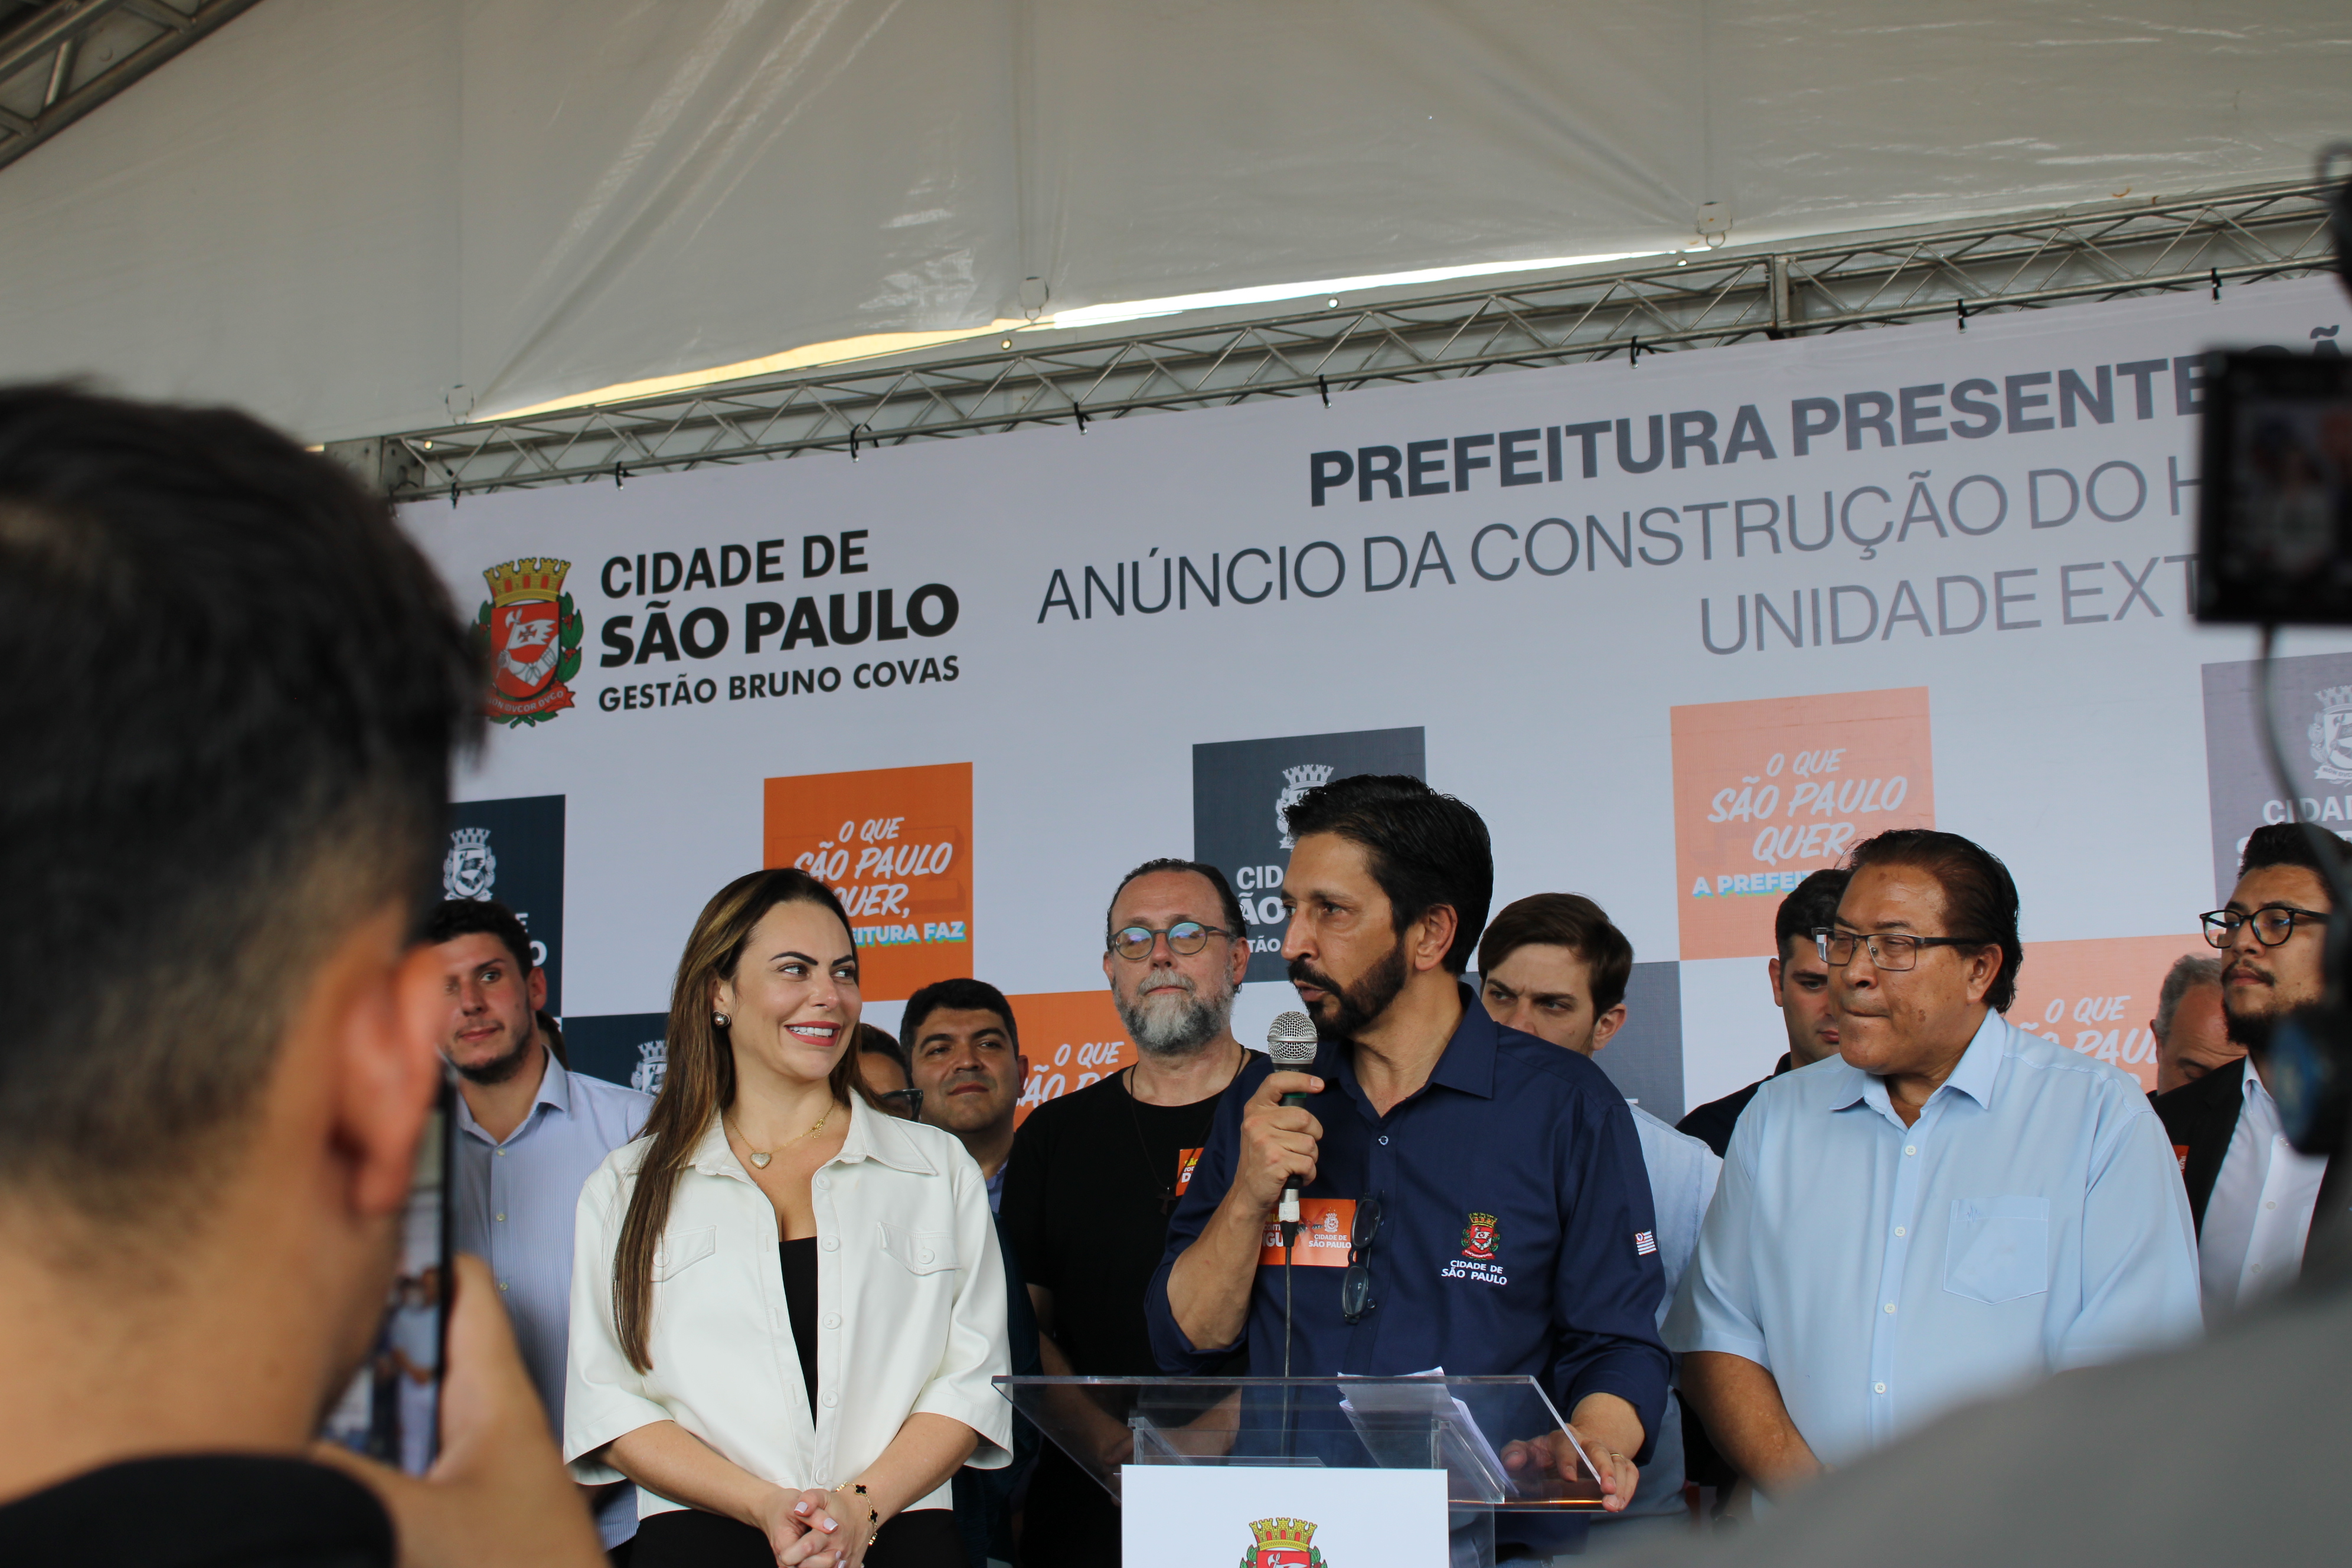 Foto do prefeito Ricardo Nunes falando ao microfone ao lado de sua esposa, a primeira dama Regina Carnovale, que está olhando e sorrindo para ele, enquanto outros membros da equipe de governo estão atrás dele no palanque.